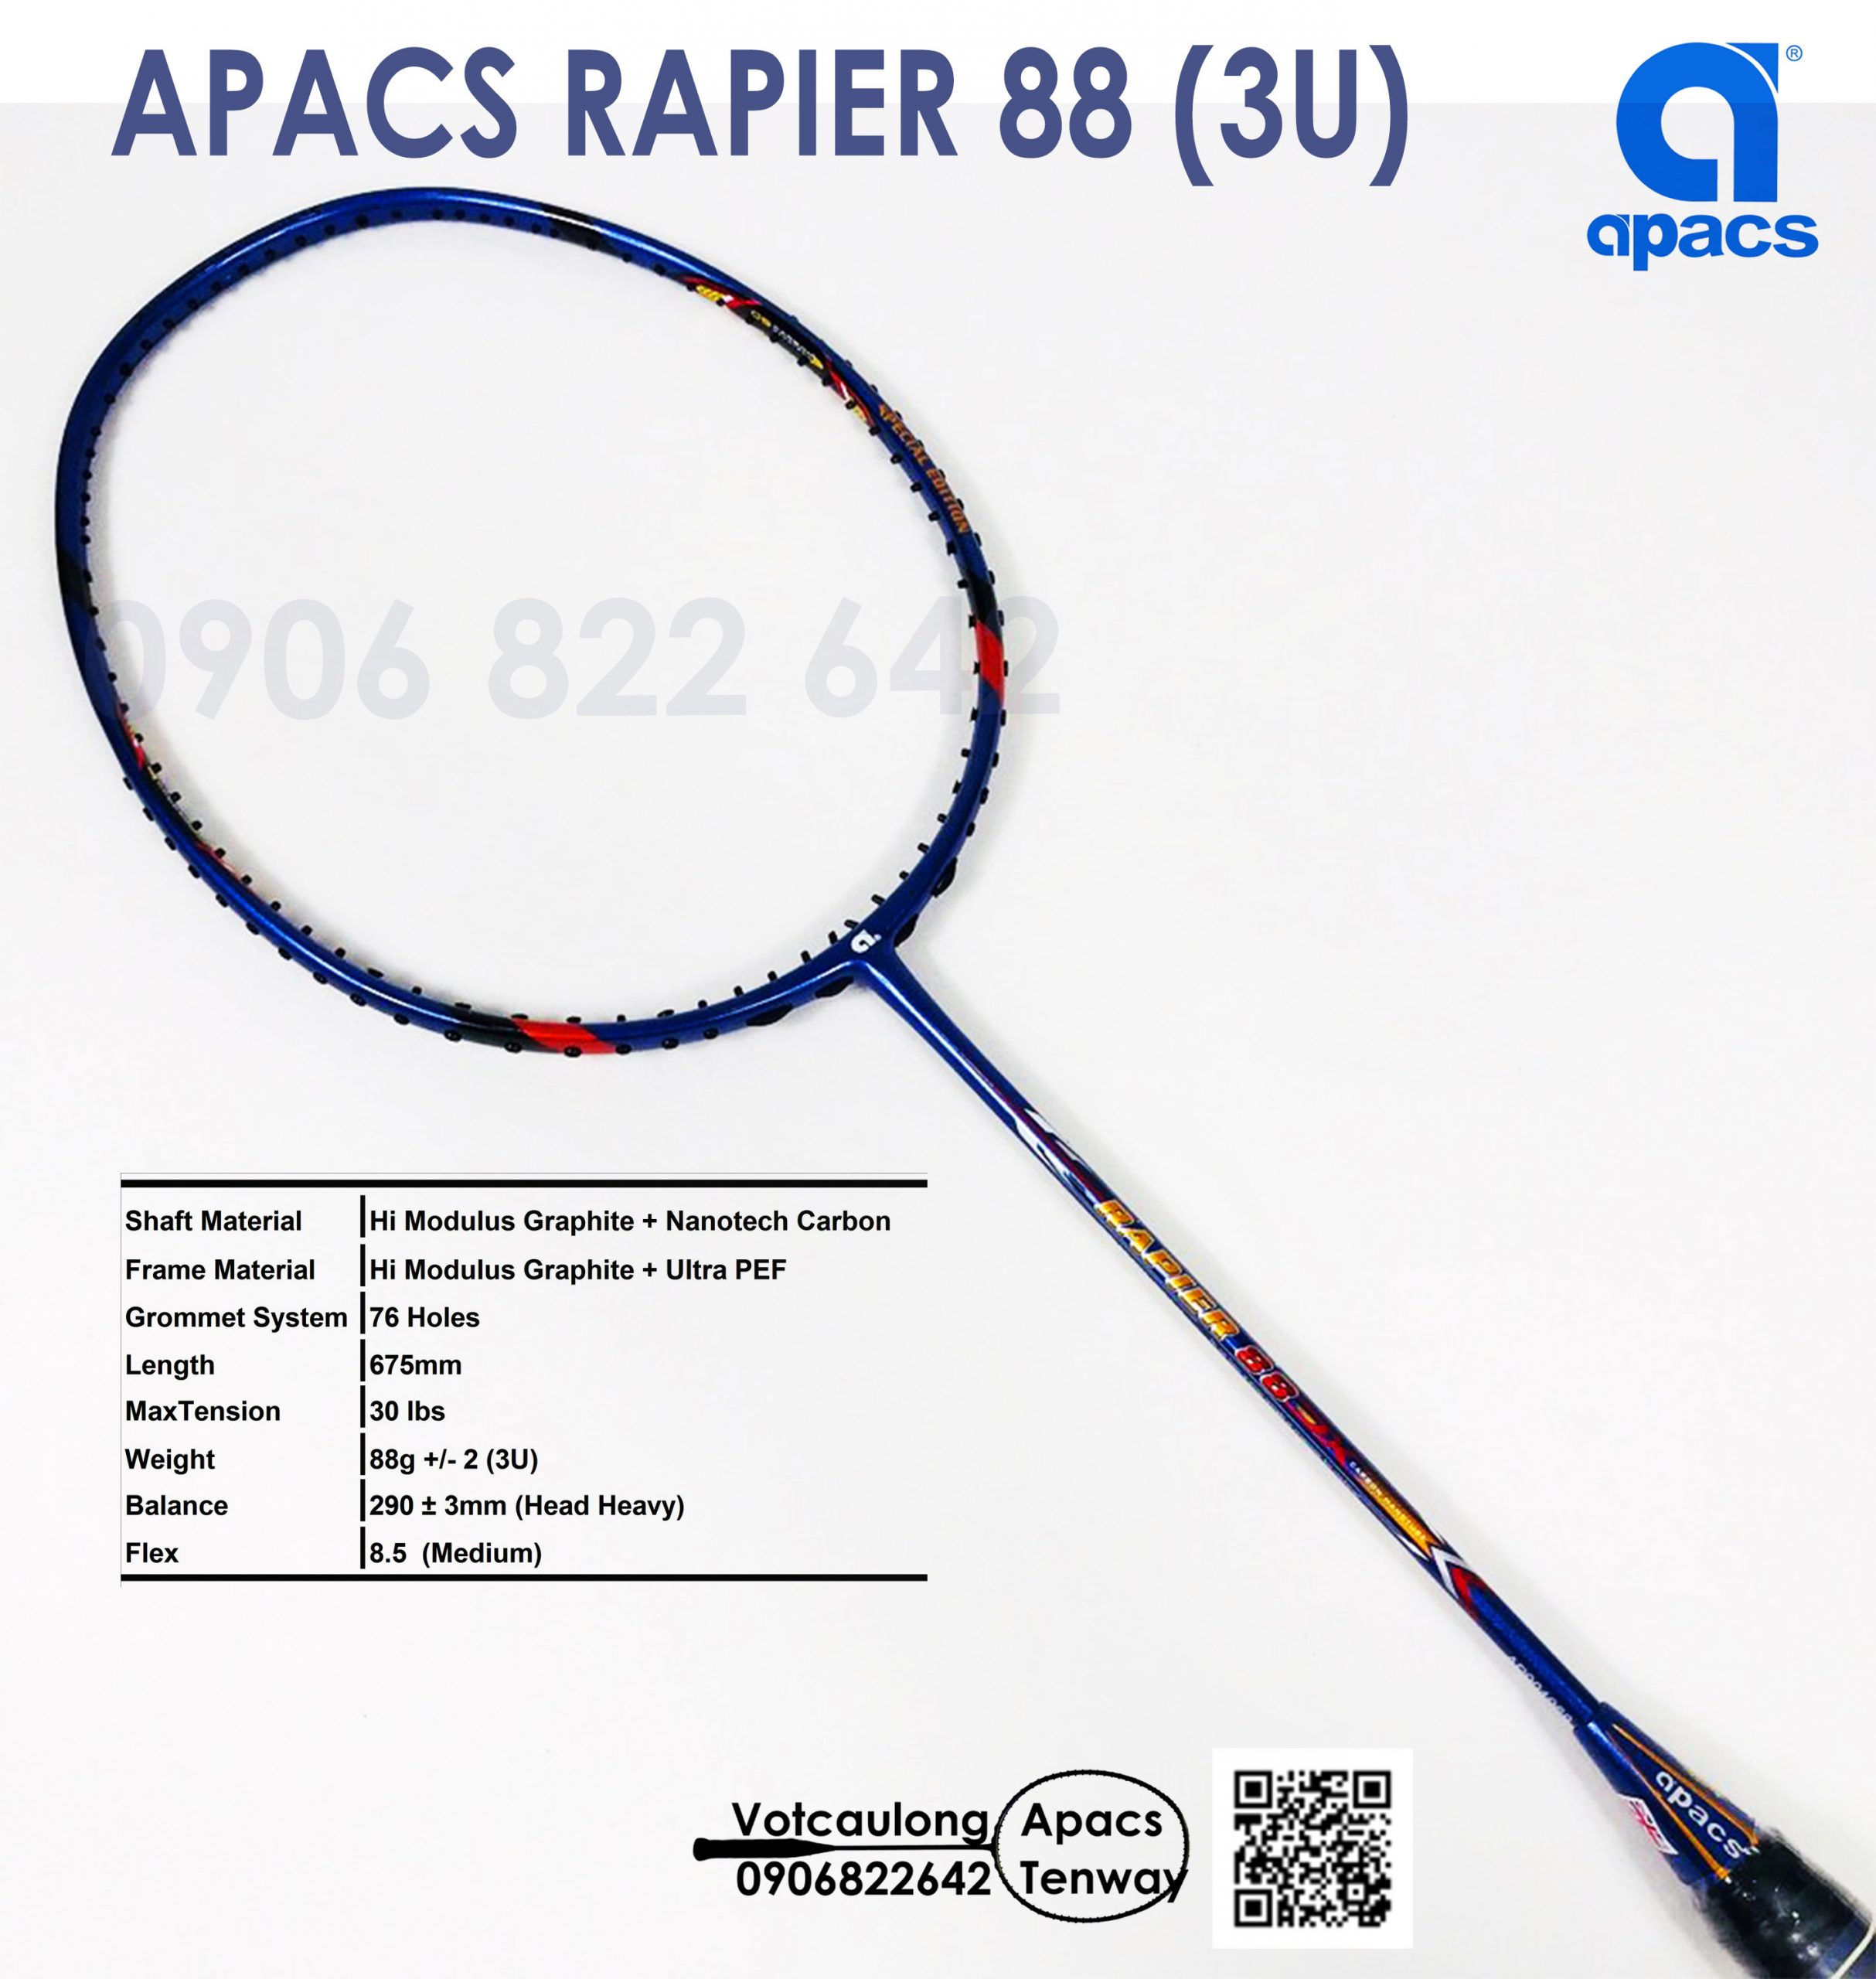 Tìm kiếm một chiếc vợt cầu lông chất lượng và đẳng cấp? Hãy xem hình ảnh sản phẩm Apacs Rapier 88 tại đây để khám phá những tính năng và đặc điểm nổi bật của chiếc vợt này.